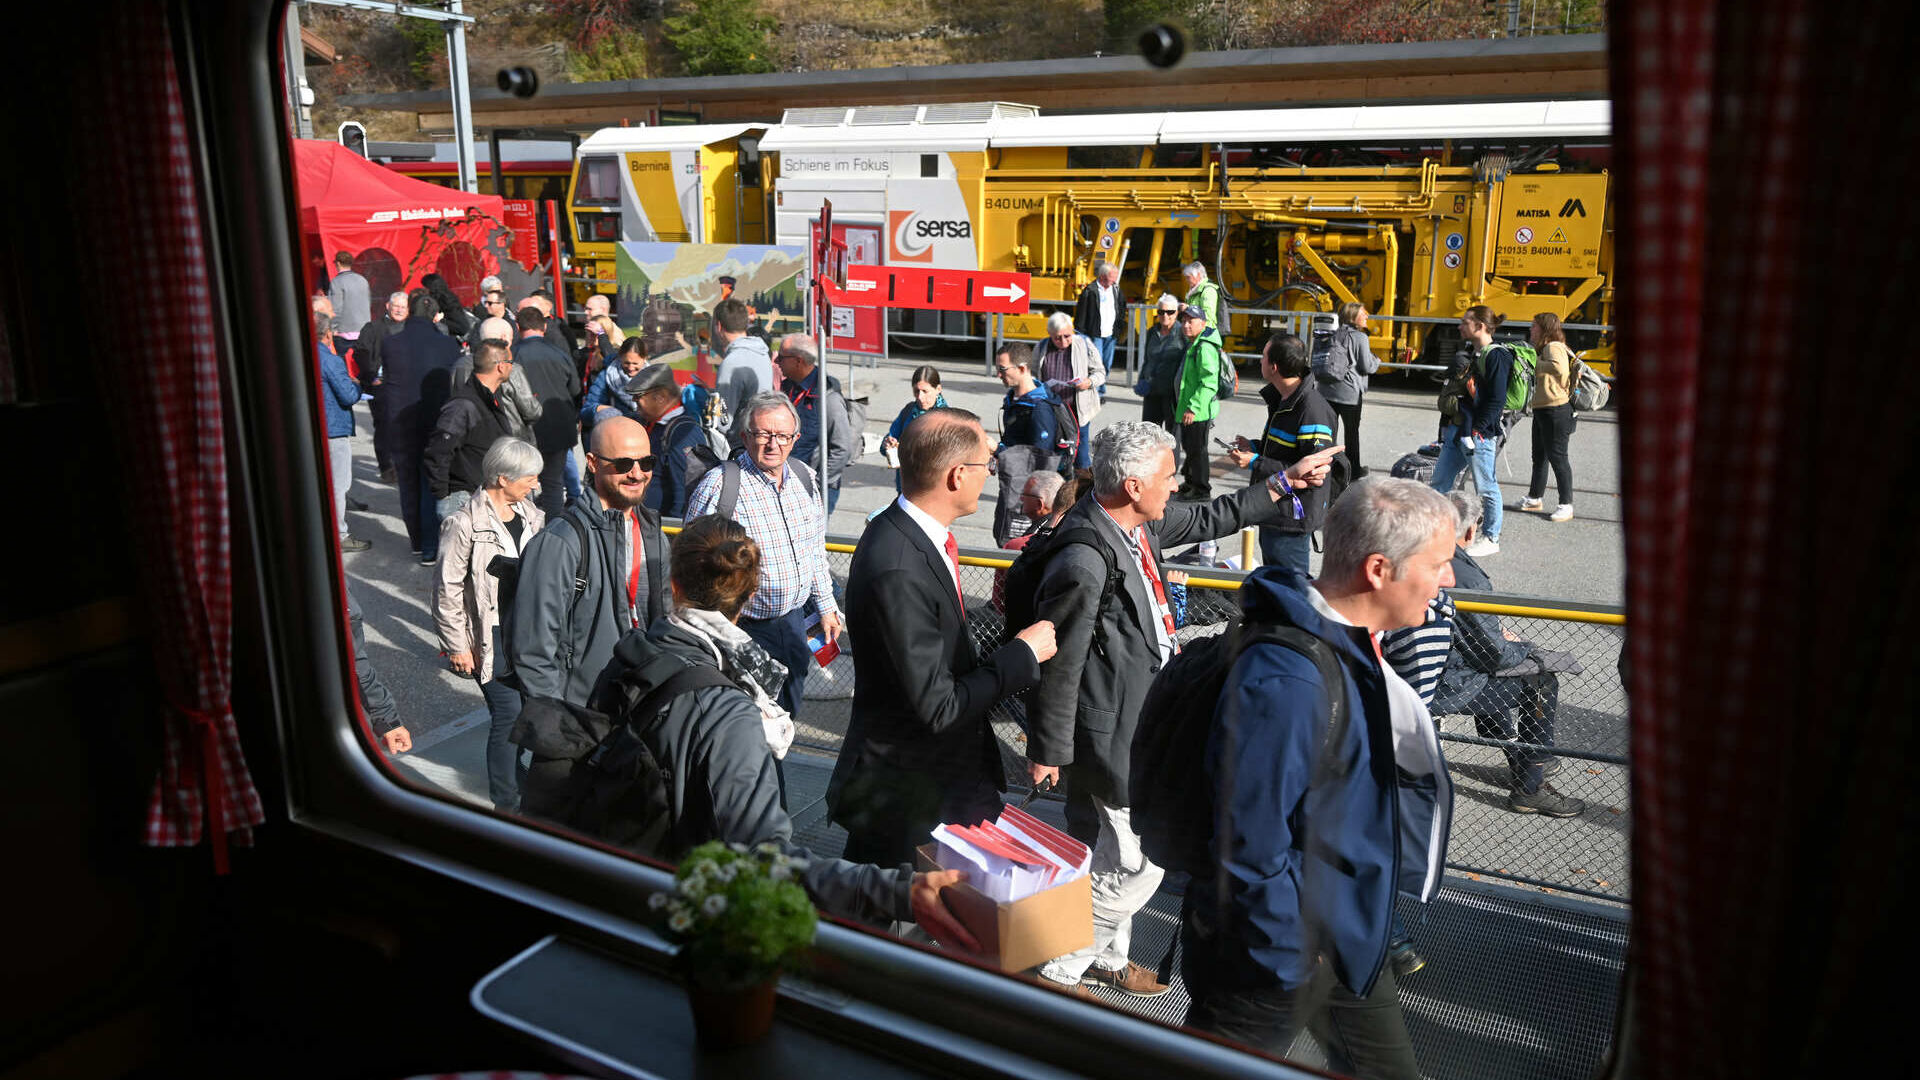 Le attività per il pubblico dei Grigioni durante il record per il treno a scartamento ridotto più lungo del mondo delle Ferrovie Retiche